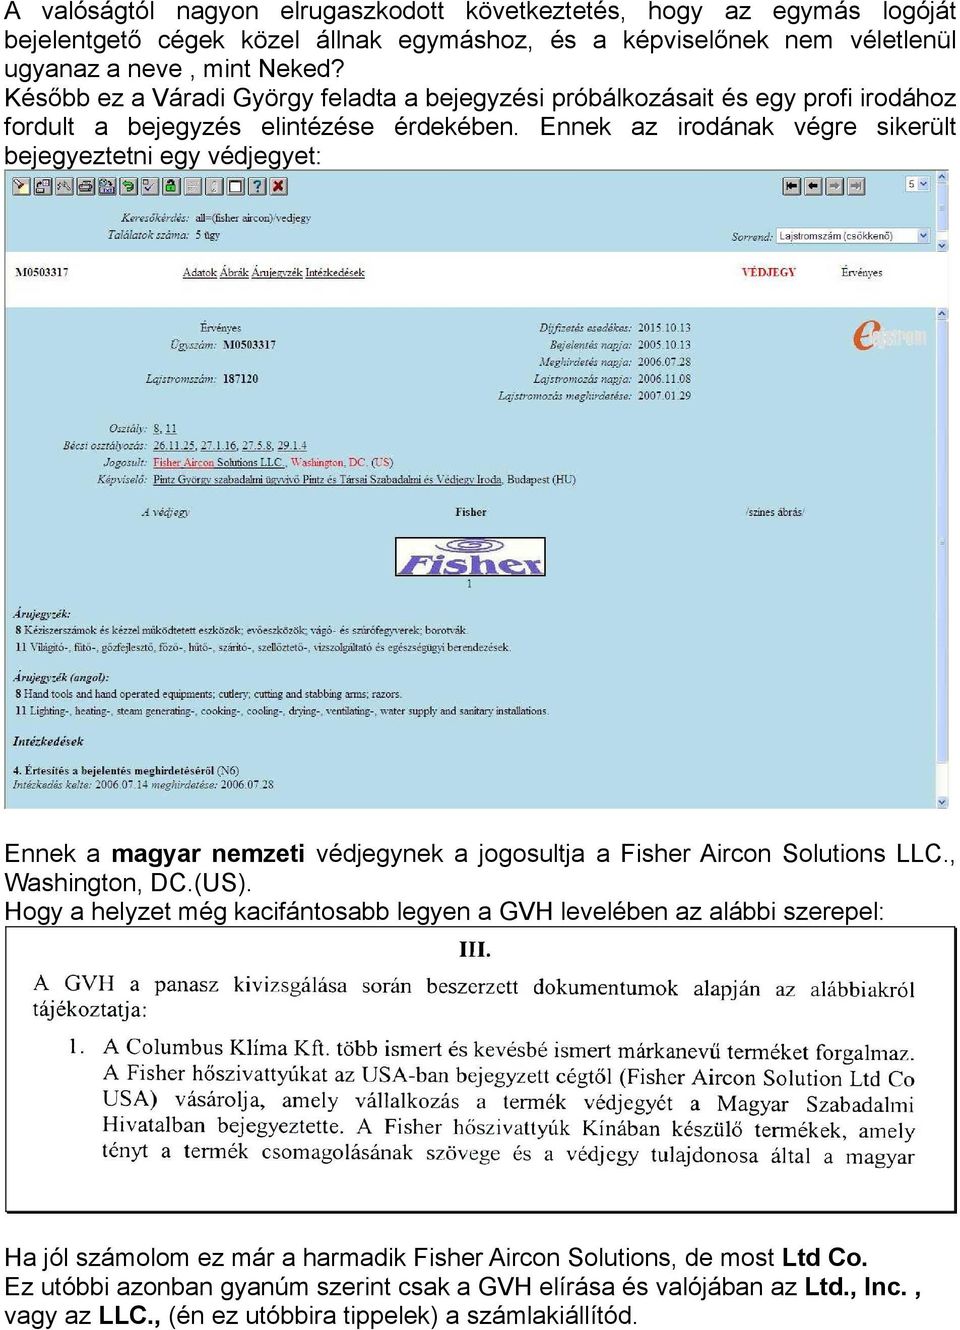 Ennek az irodának végre sikerült bejegyeztetni egy védjegyet: Ennek a magyar nemzeti védjegynek a jogosultja a Fisher Aircon Solutions LLC., Washington, DC.(US).